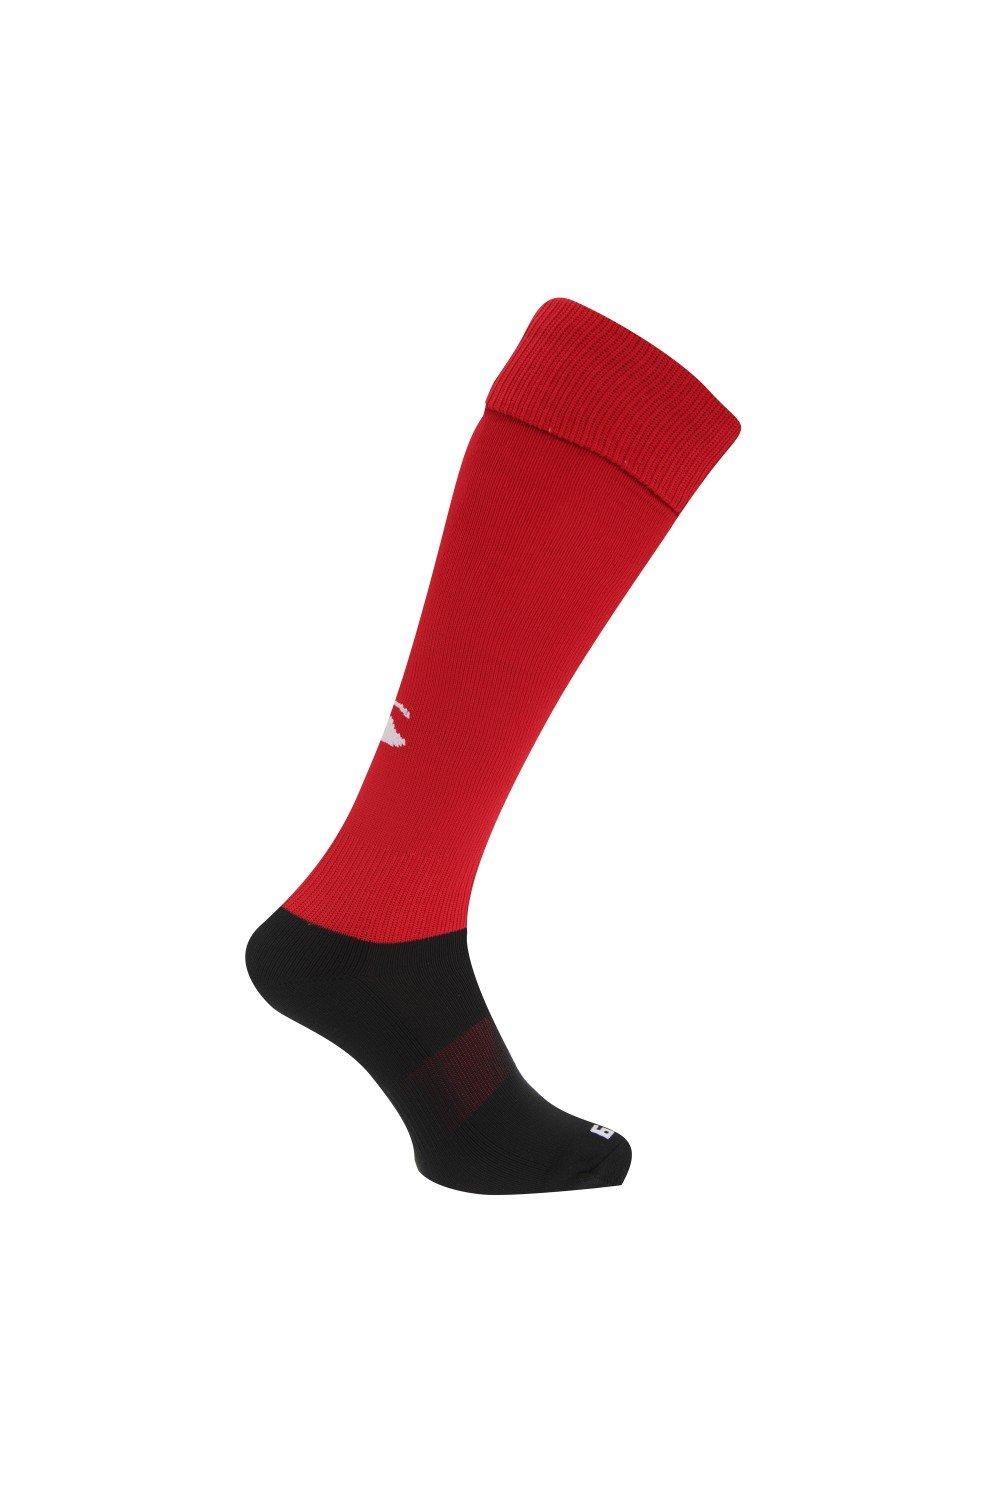 Спортивные носки для игры в регби Canterbury, красный